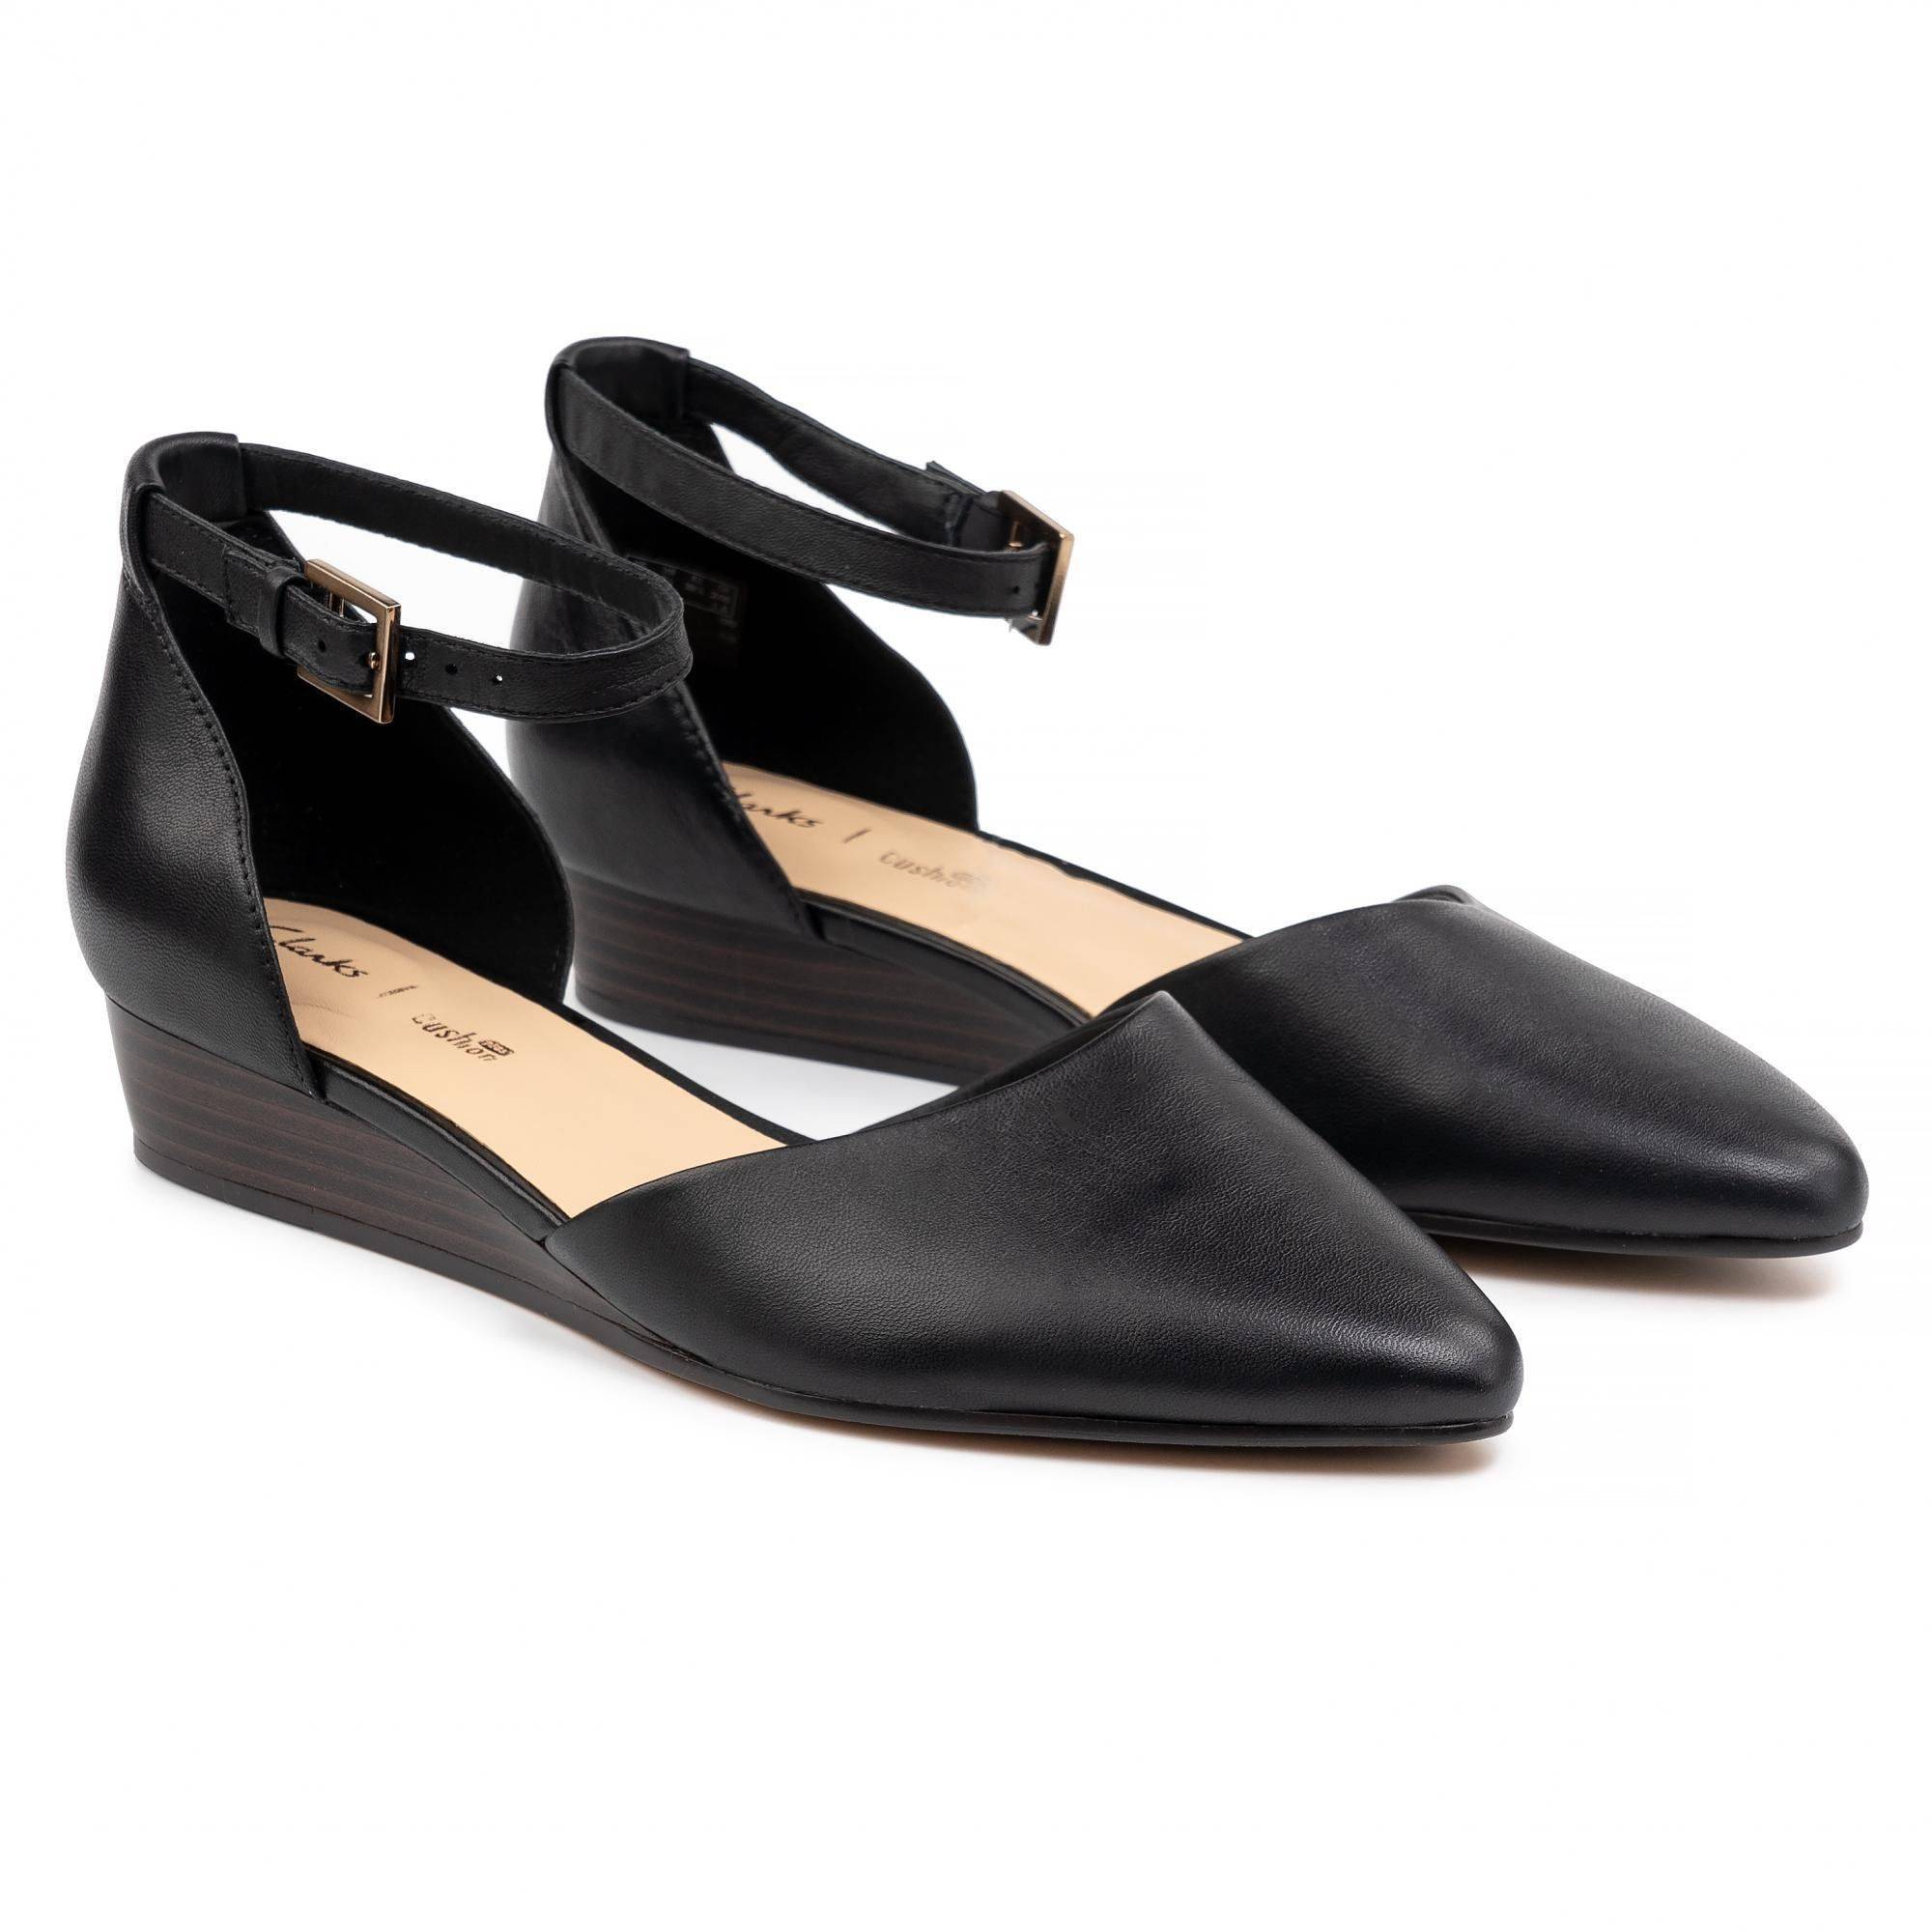 Купить Женские туфли ремешке Clarks, цвет черный, Модель: Sense Eva, арт: 26139223 - нет в наличии